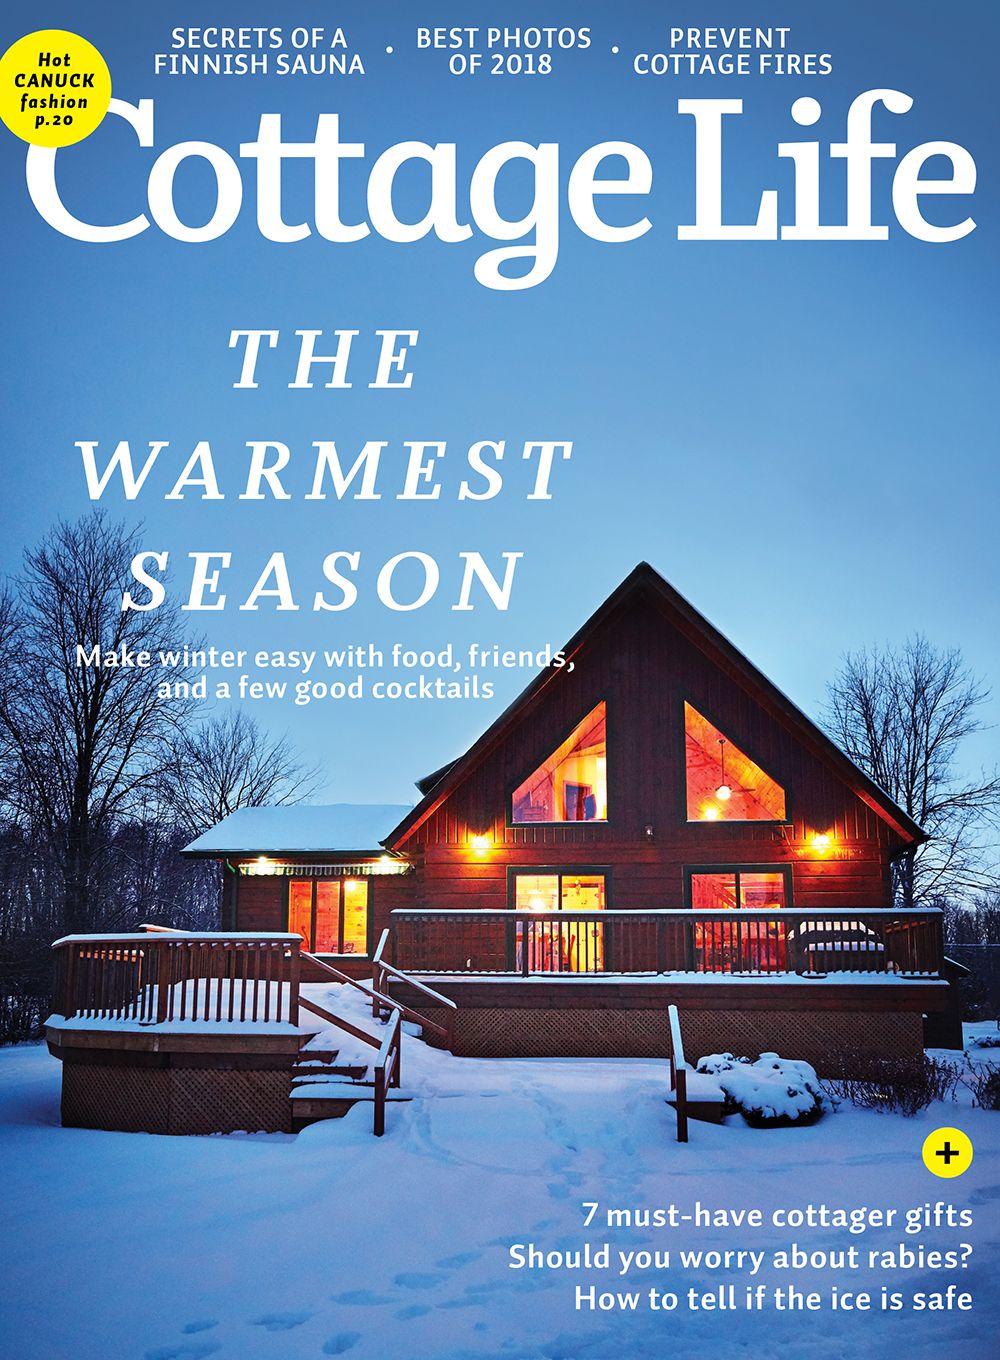 Winter 2018 Cottage Life Magazines Cottage Life